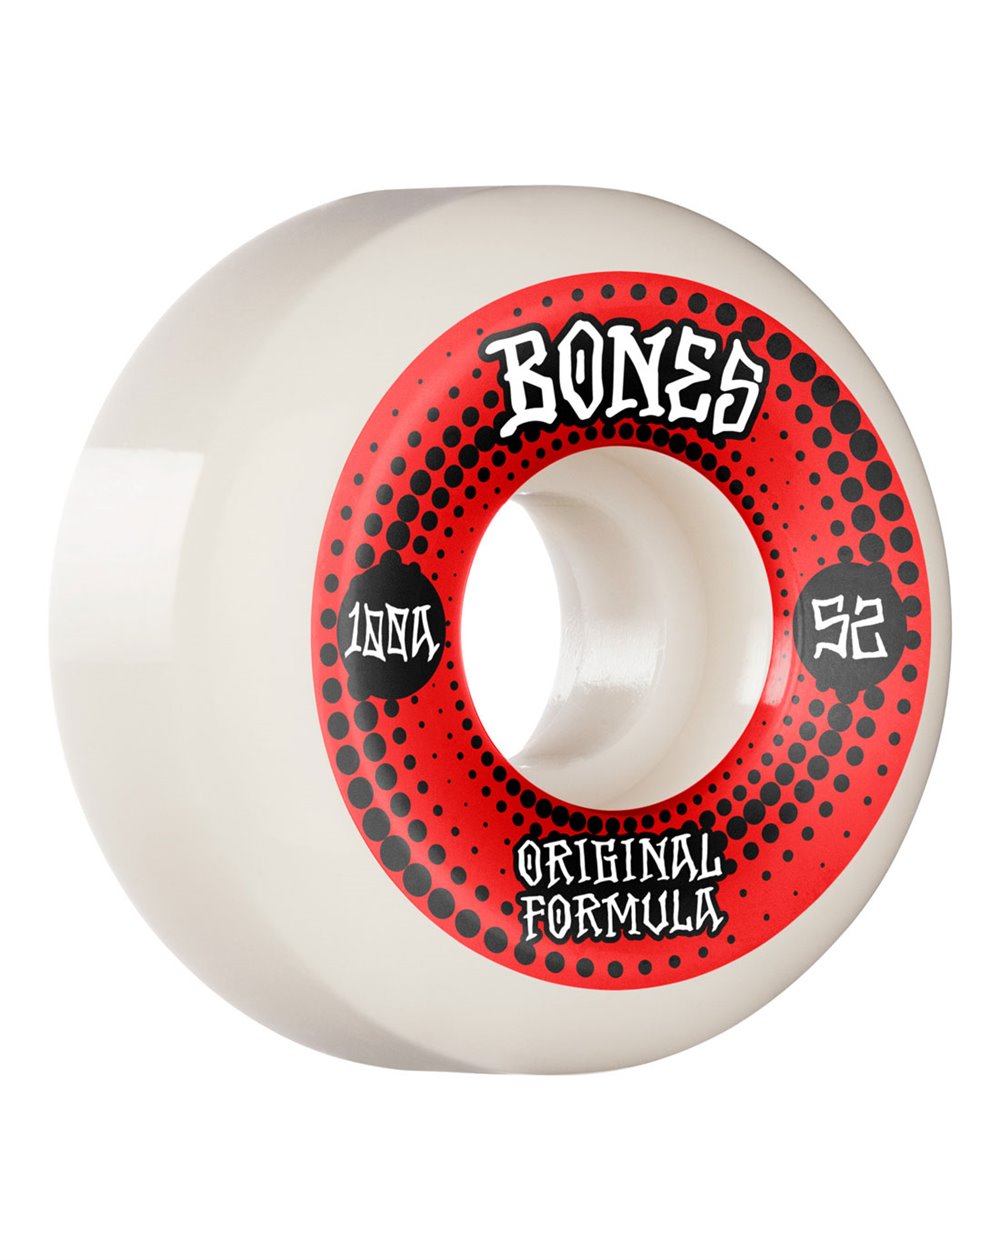 Bones Wheels 100's V5 Sidecut 52mm 100A Skateboard Wheels White pack of 4